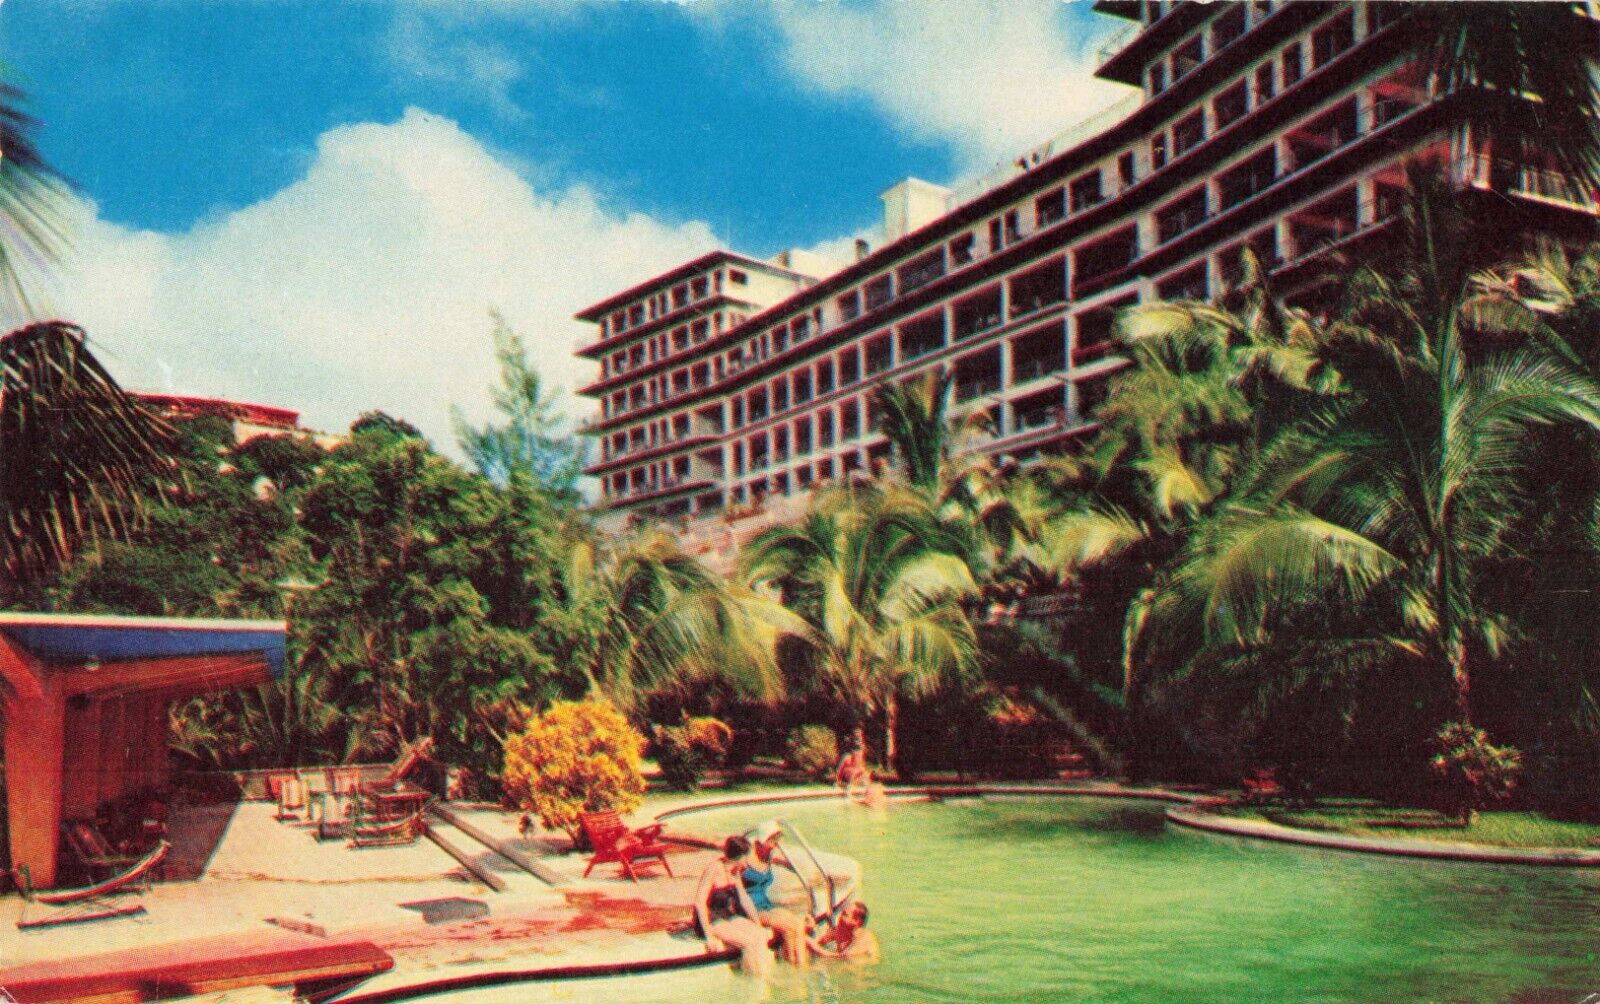 Acapulco Guerrero Mexico, Hotel Majestic Pool, Vintage Postcard